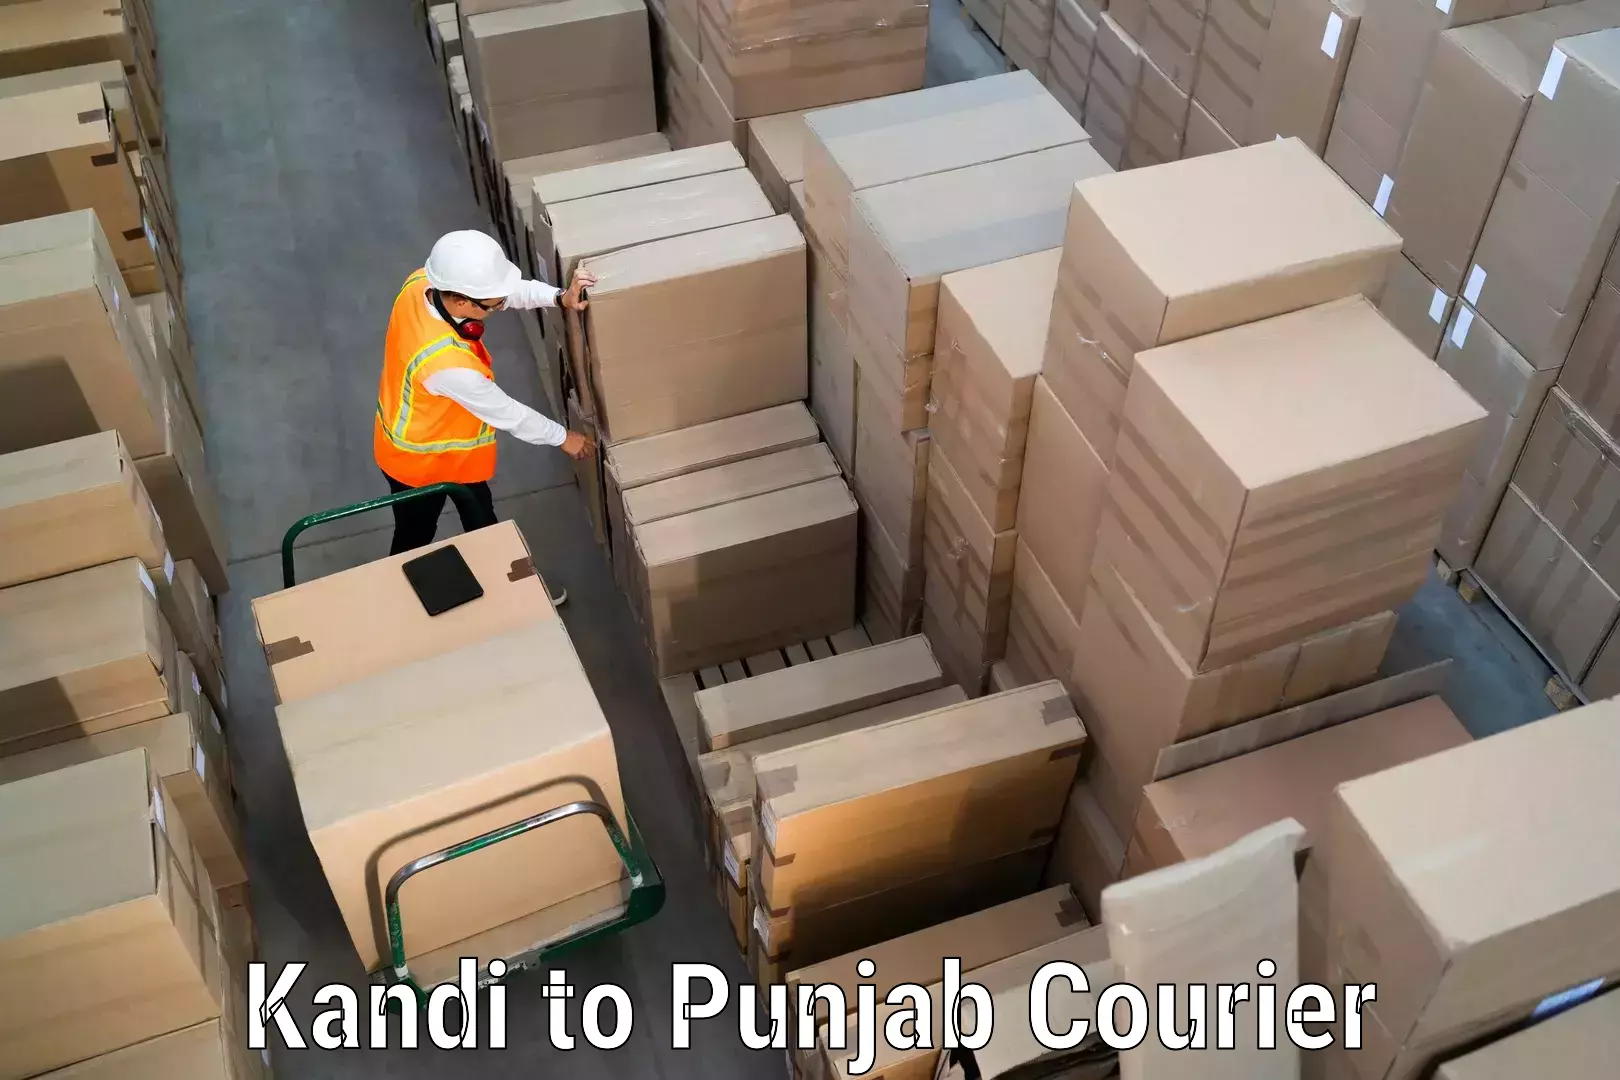 Express delivery network Kandi to Jalandhar